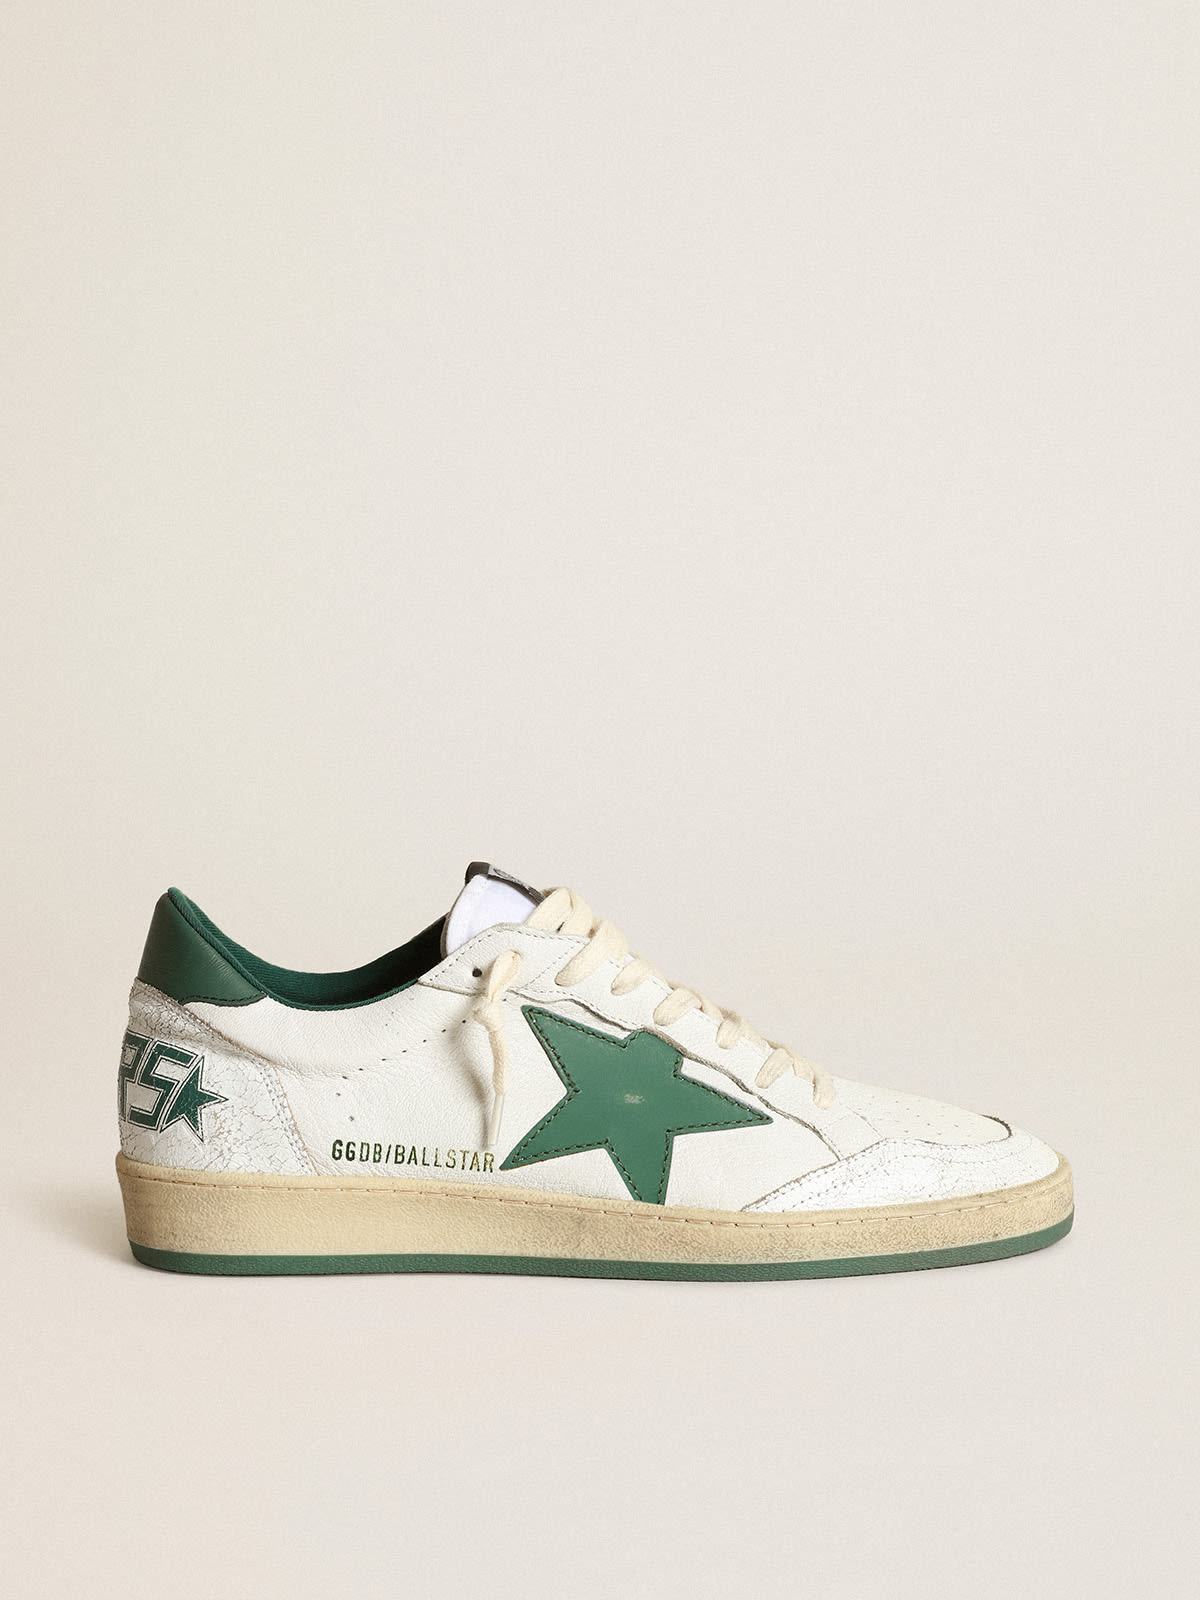 Zapatillas deportivas Ball Star de napa blanca con estrella y refuerzo del talón de piel mate verde